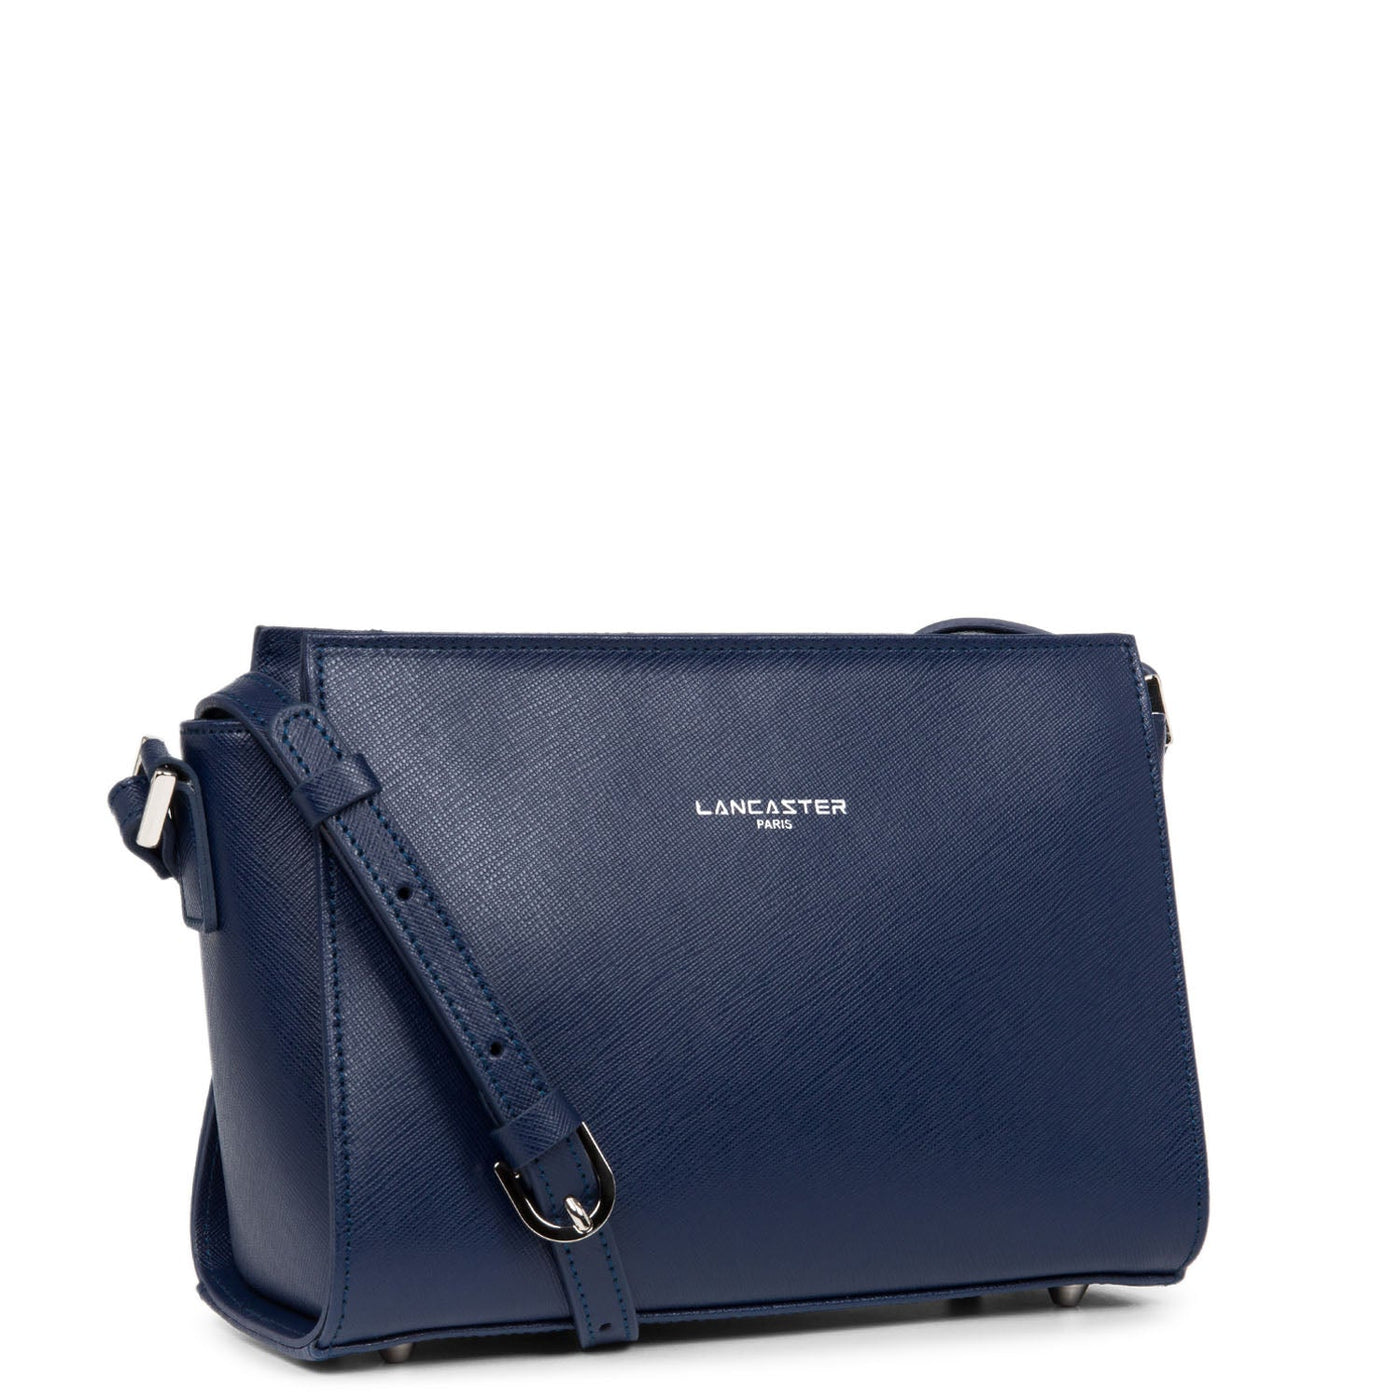 crossbody bag - saffiano intemporel #couleur_bleu-fonc